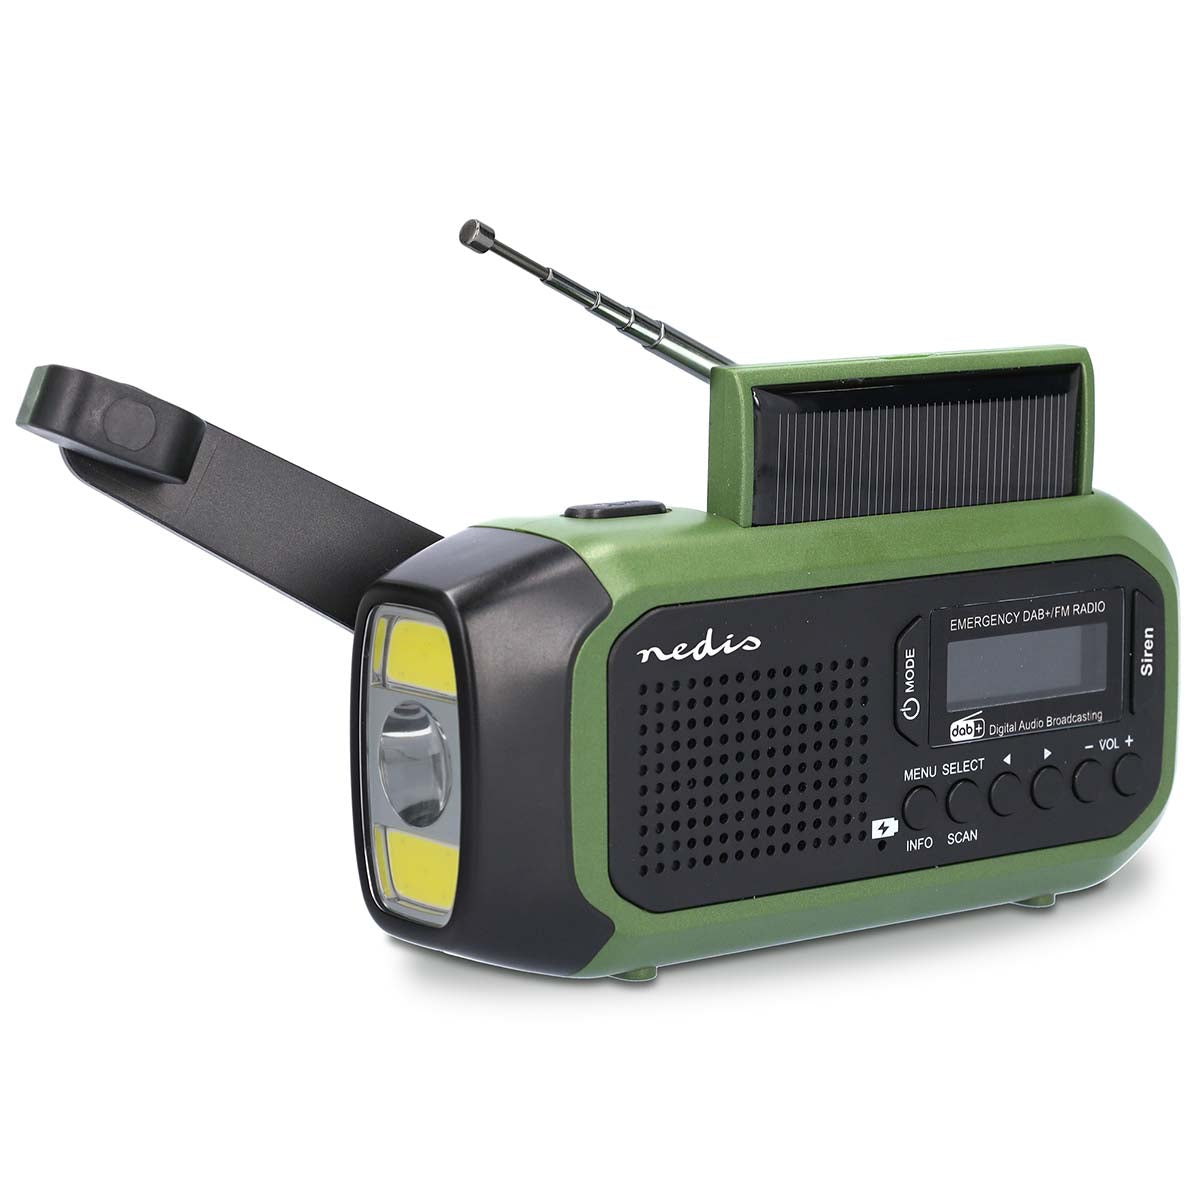 Notfallradio | Tragbare Ausführung | DAB+ / FM | Batteriebetrieben / Handkurbel / Solar Powered / Stromversorgung über USB | Wecker | Grün / Schwarz